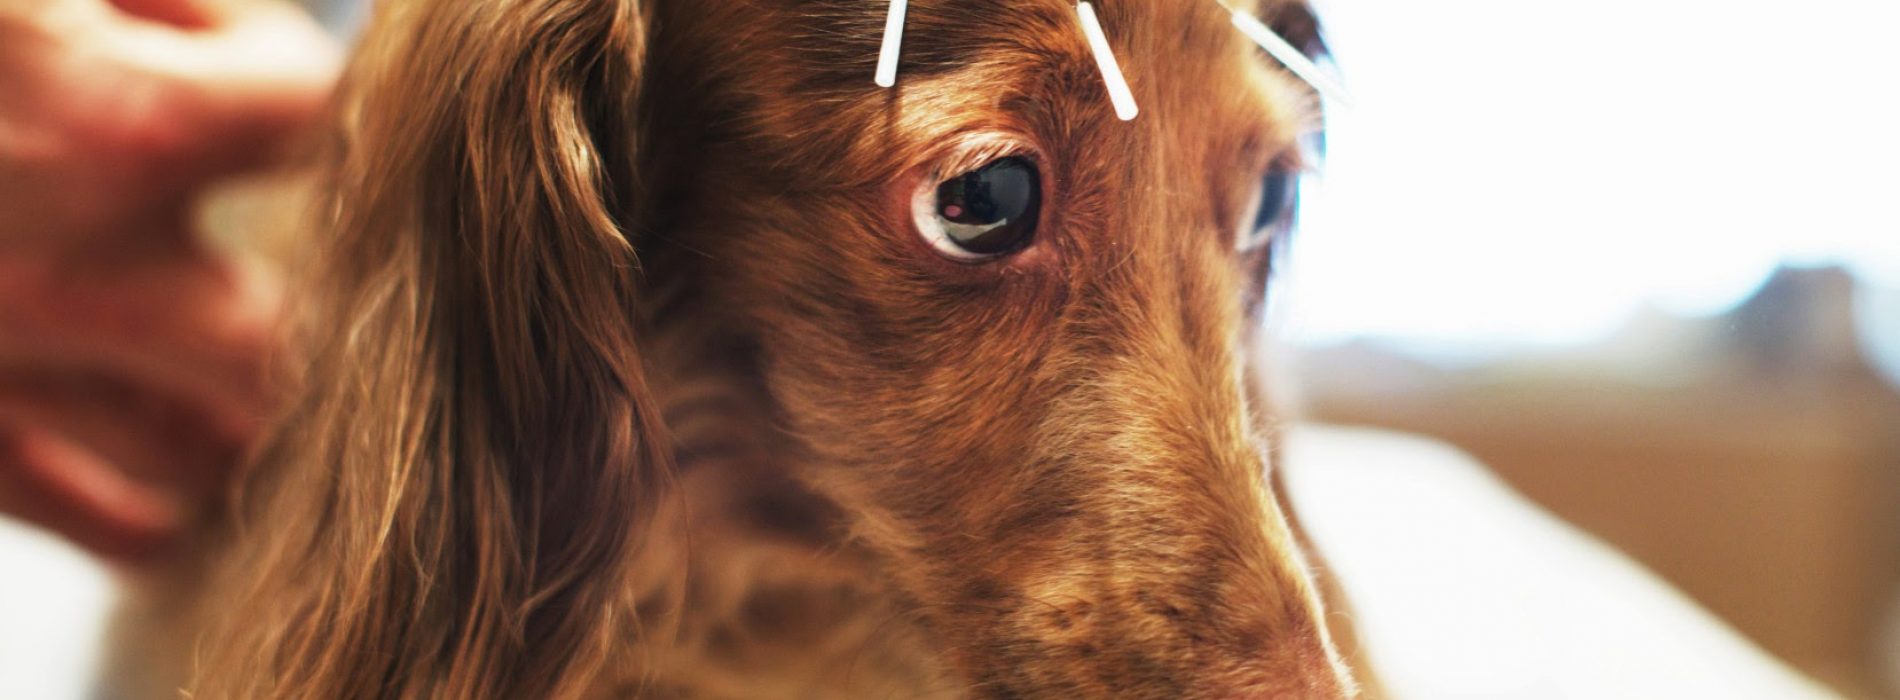 Ooit nagedacht over acupunctuur en homeopathie voor je huisdier?